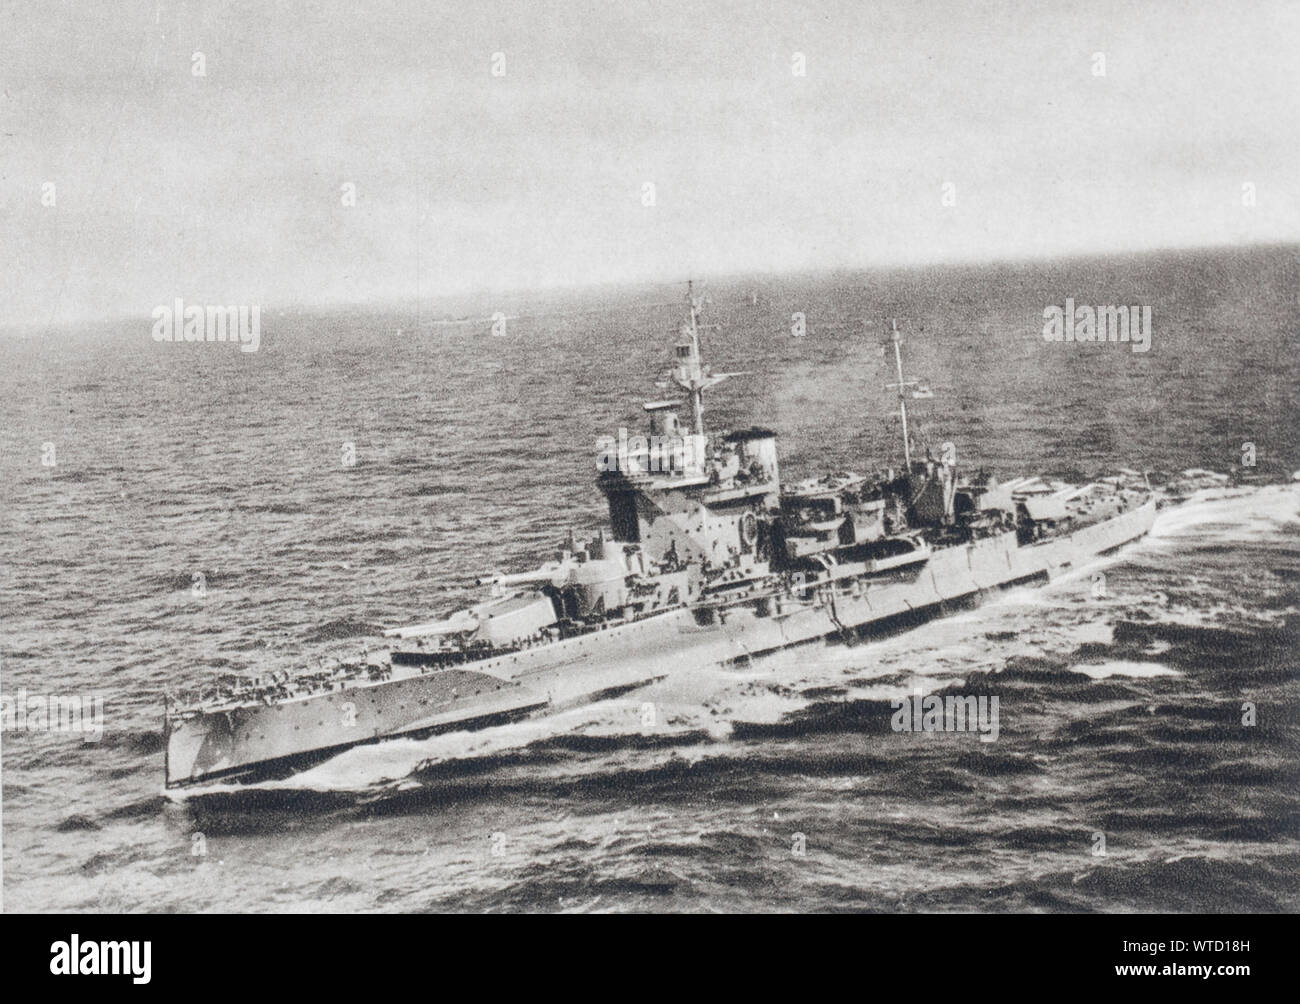 Das englische Kriegsschiff "warspite" die Zweite Schlacht von Narvik gekämpft. Ns-Zeit. Stockfoto